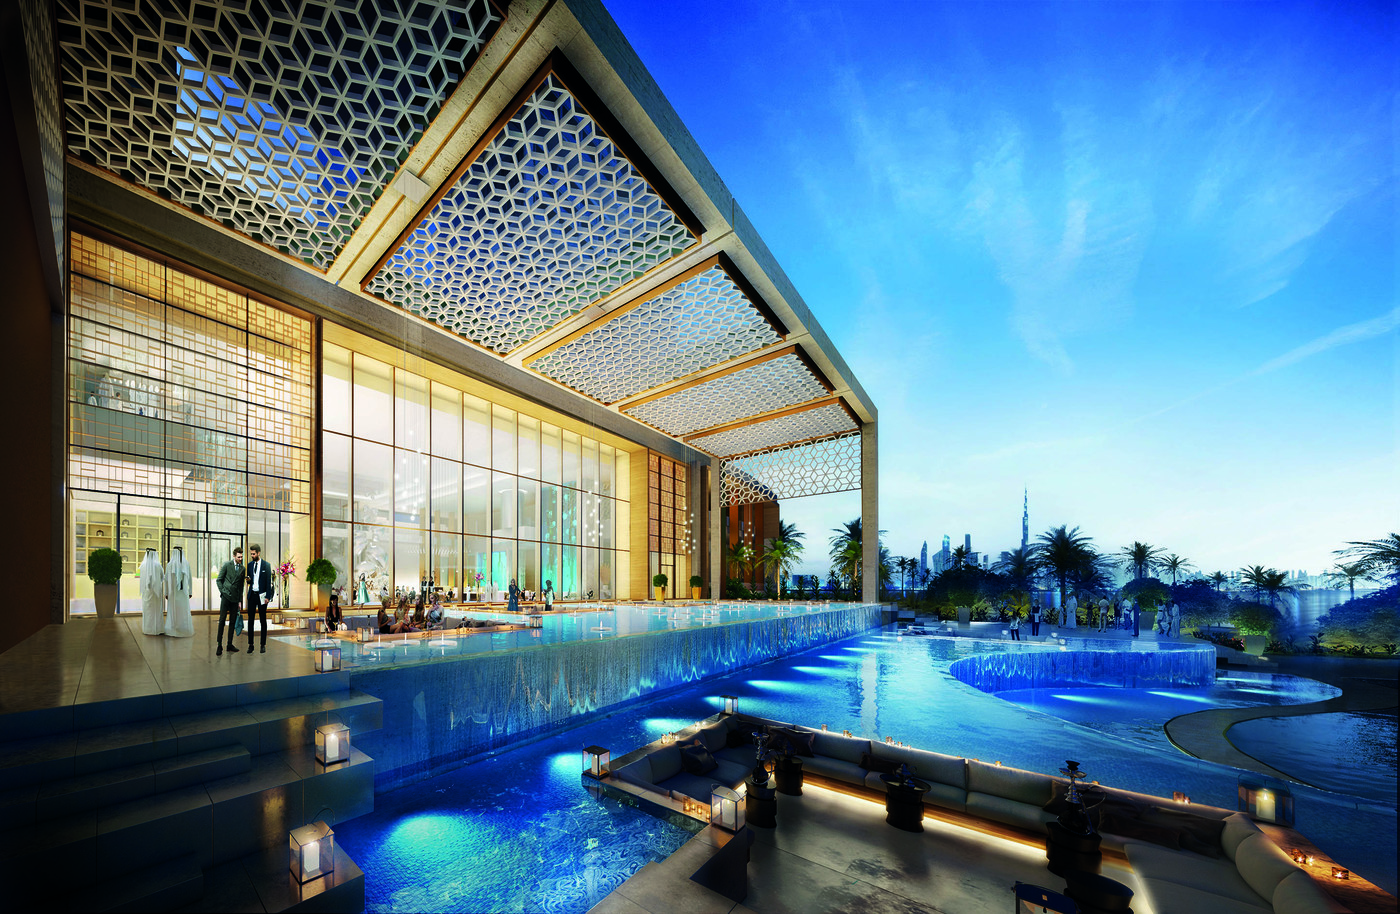 imagen 8 de The Royal Atlantis Resort & Residences, un nuevo edificio de lujo y escándalo en Dubai.